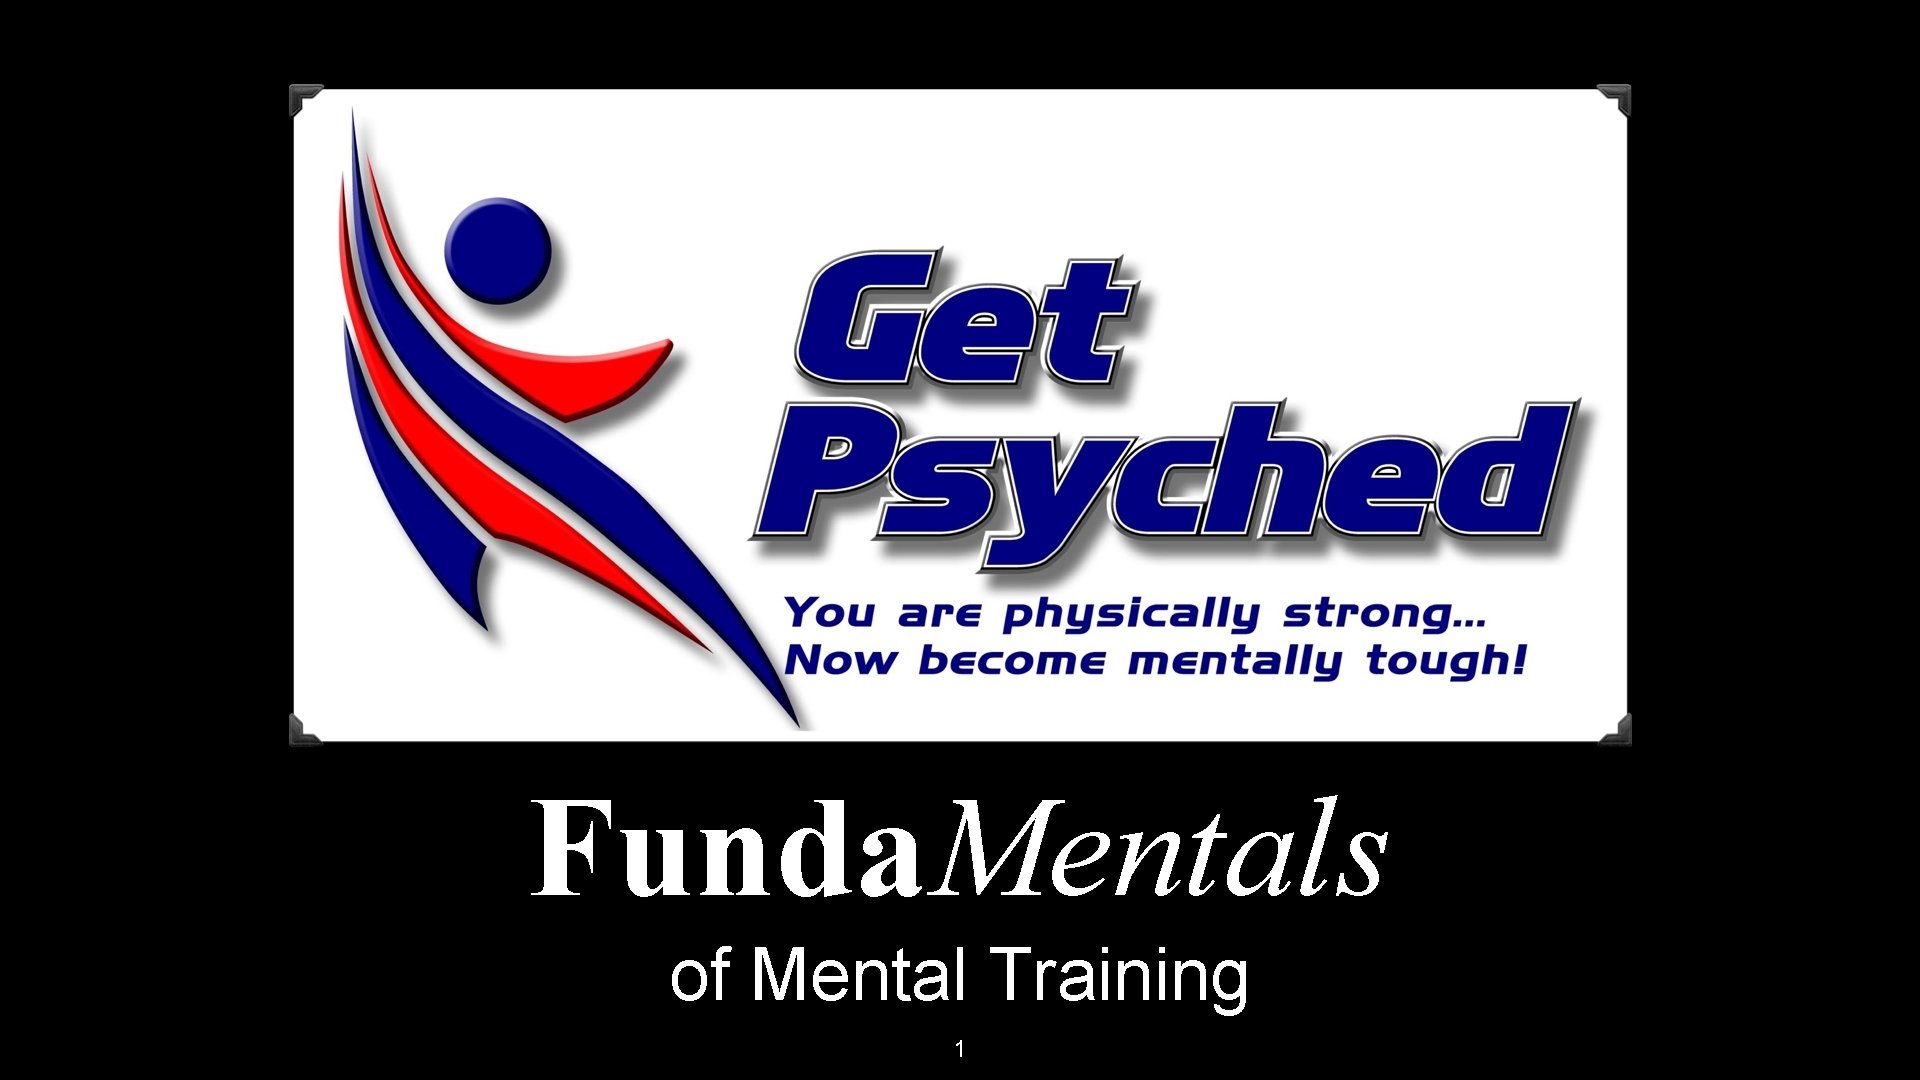 Funda. Mentals of Mental Training 1 